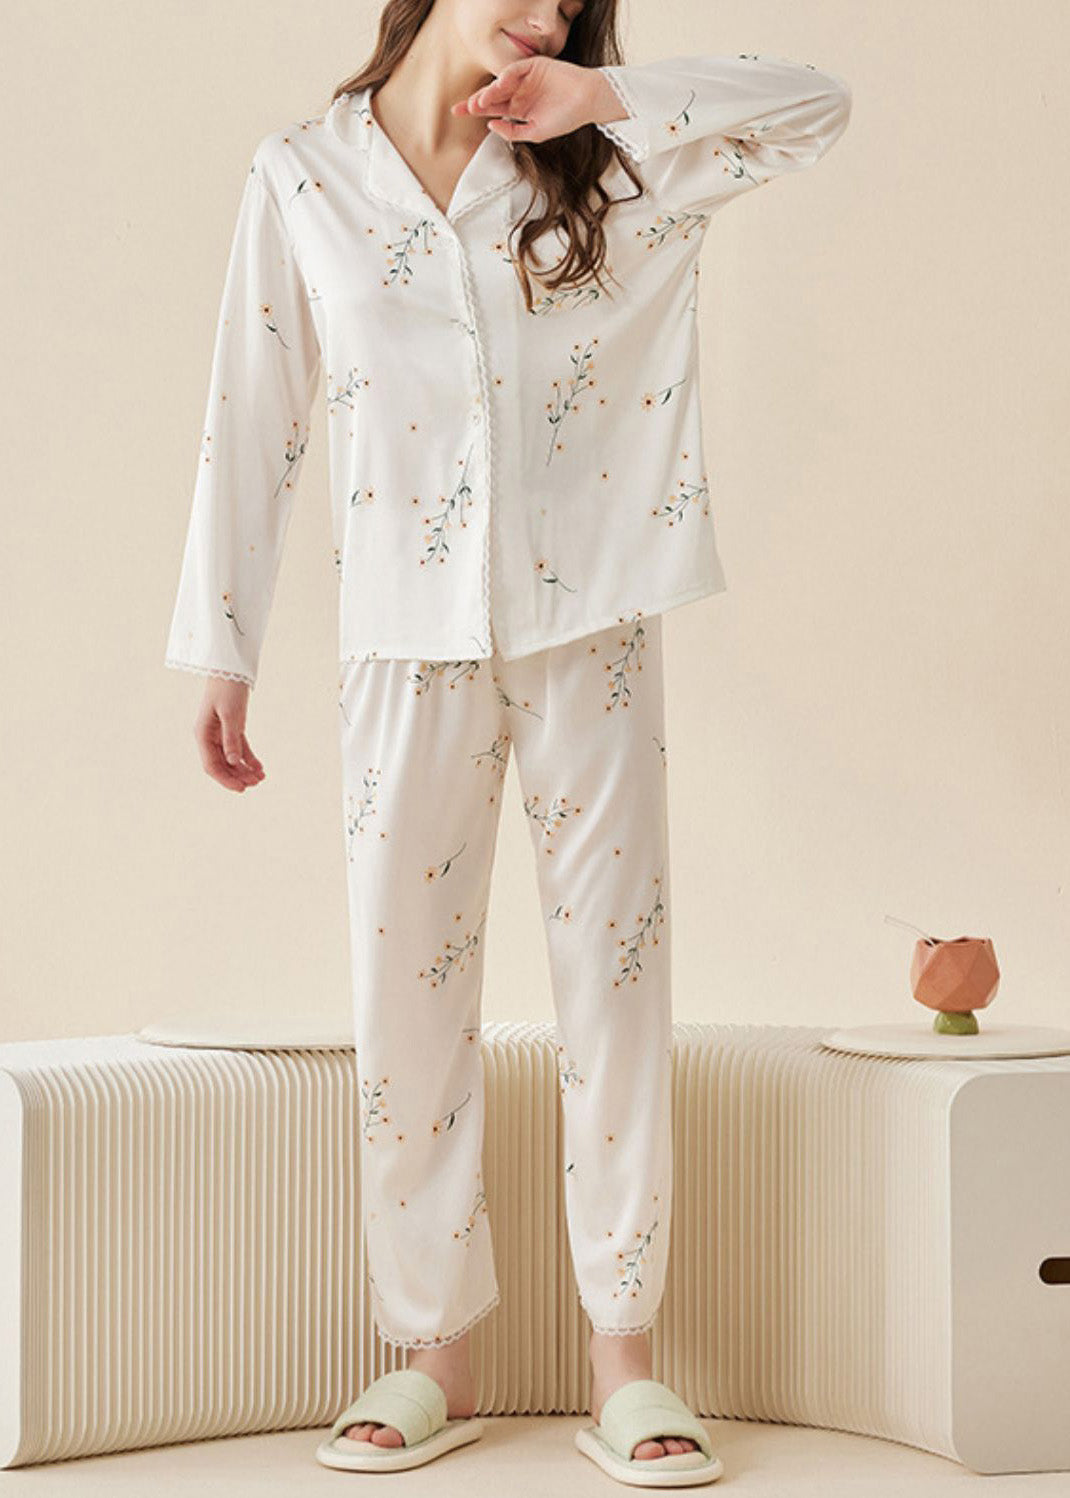 DIY White Peter Pan Collar Print Ice Silk Pajamas Two Pieces Set Spring